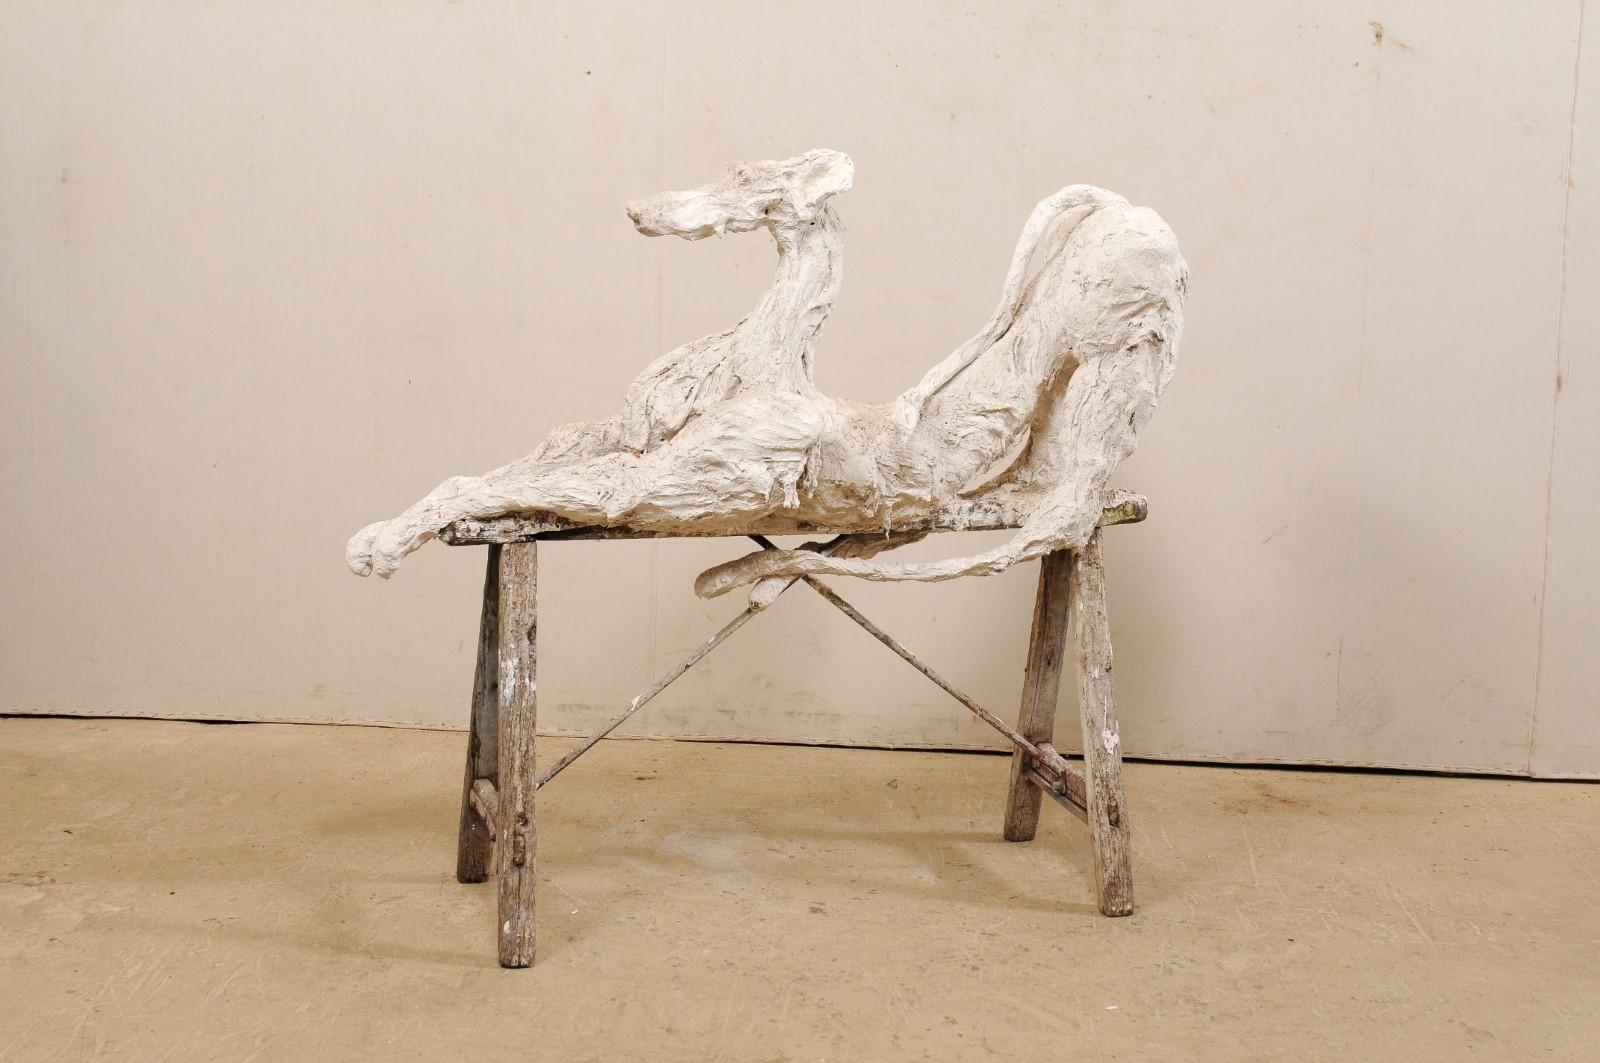 Large French Greyhound Sculpture Poised on Sawhorse Leg Base 4